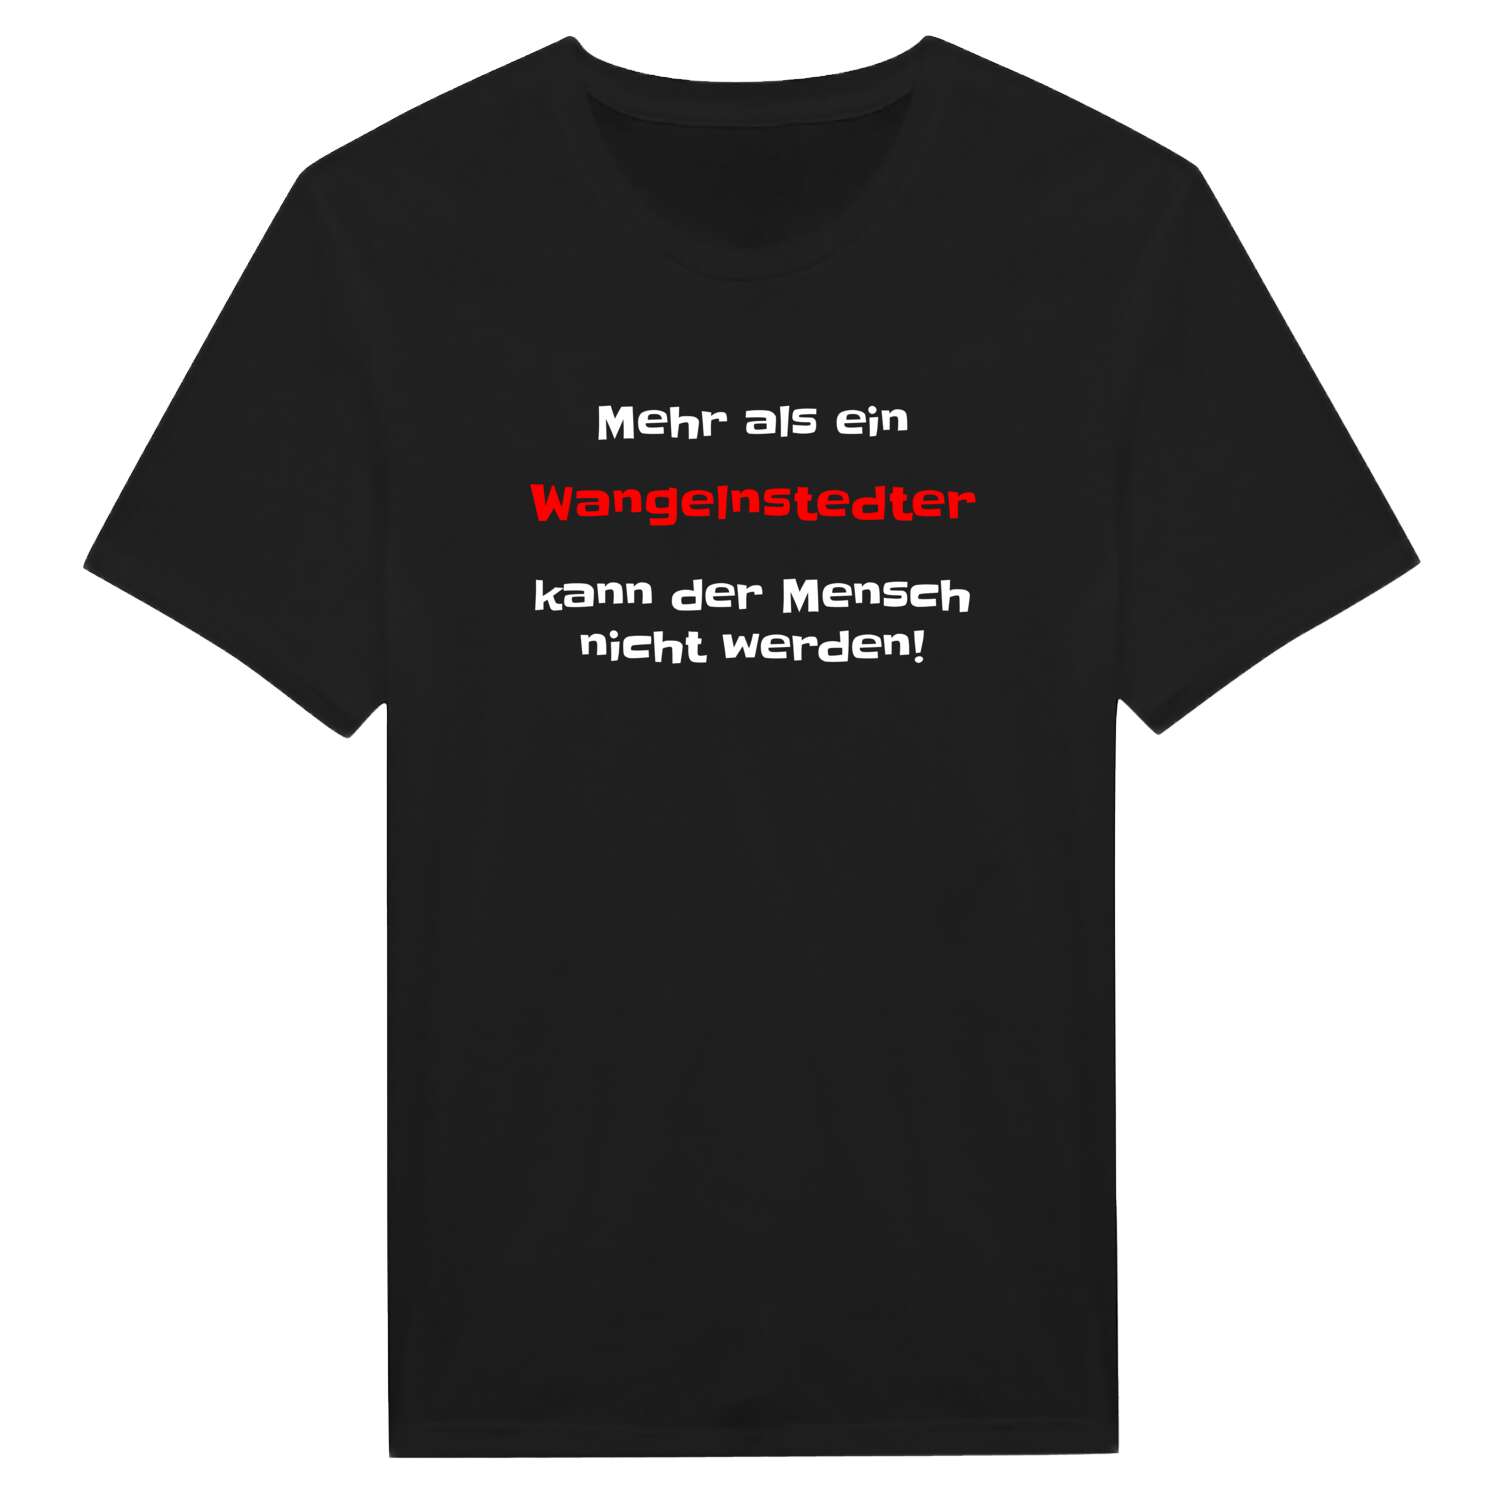 Wangelnstedt T-Shirt »Mehr als ein«